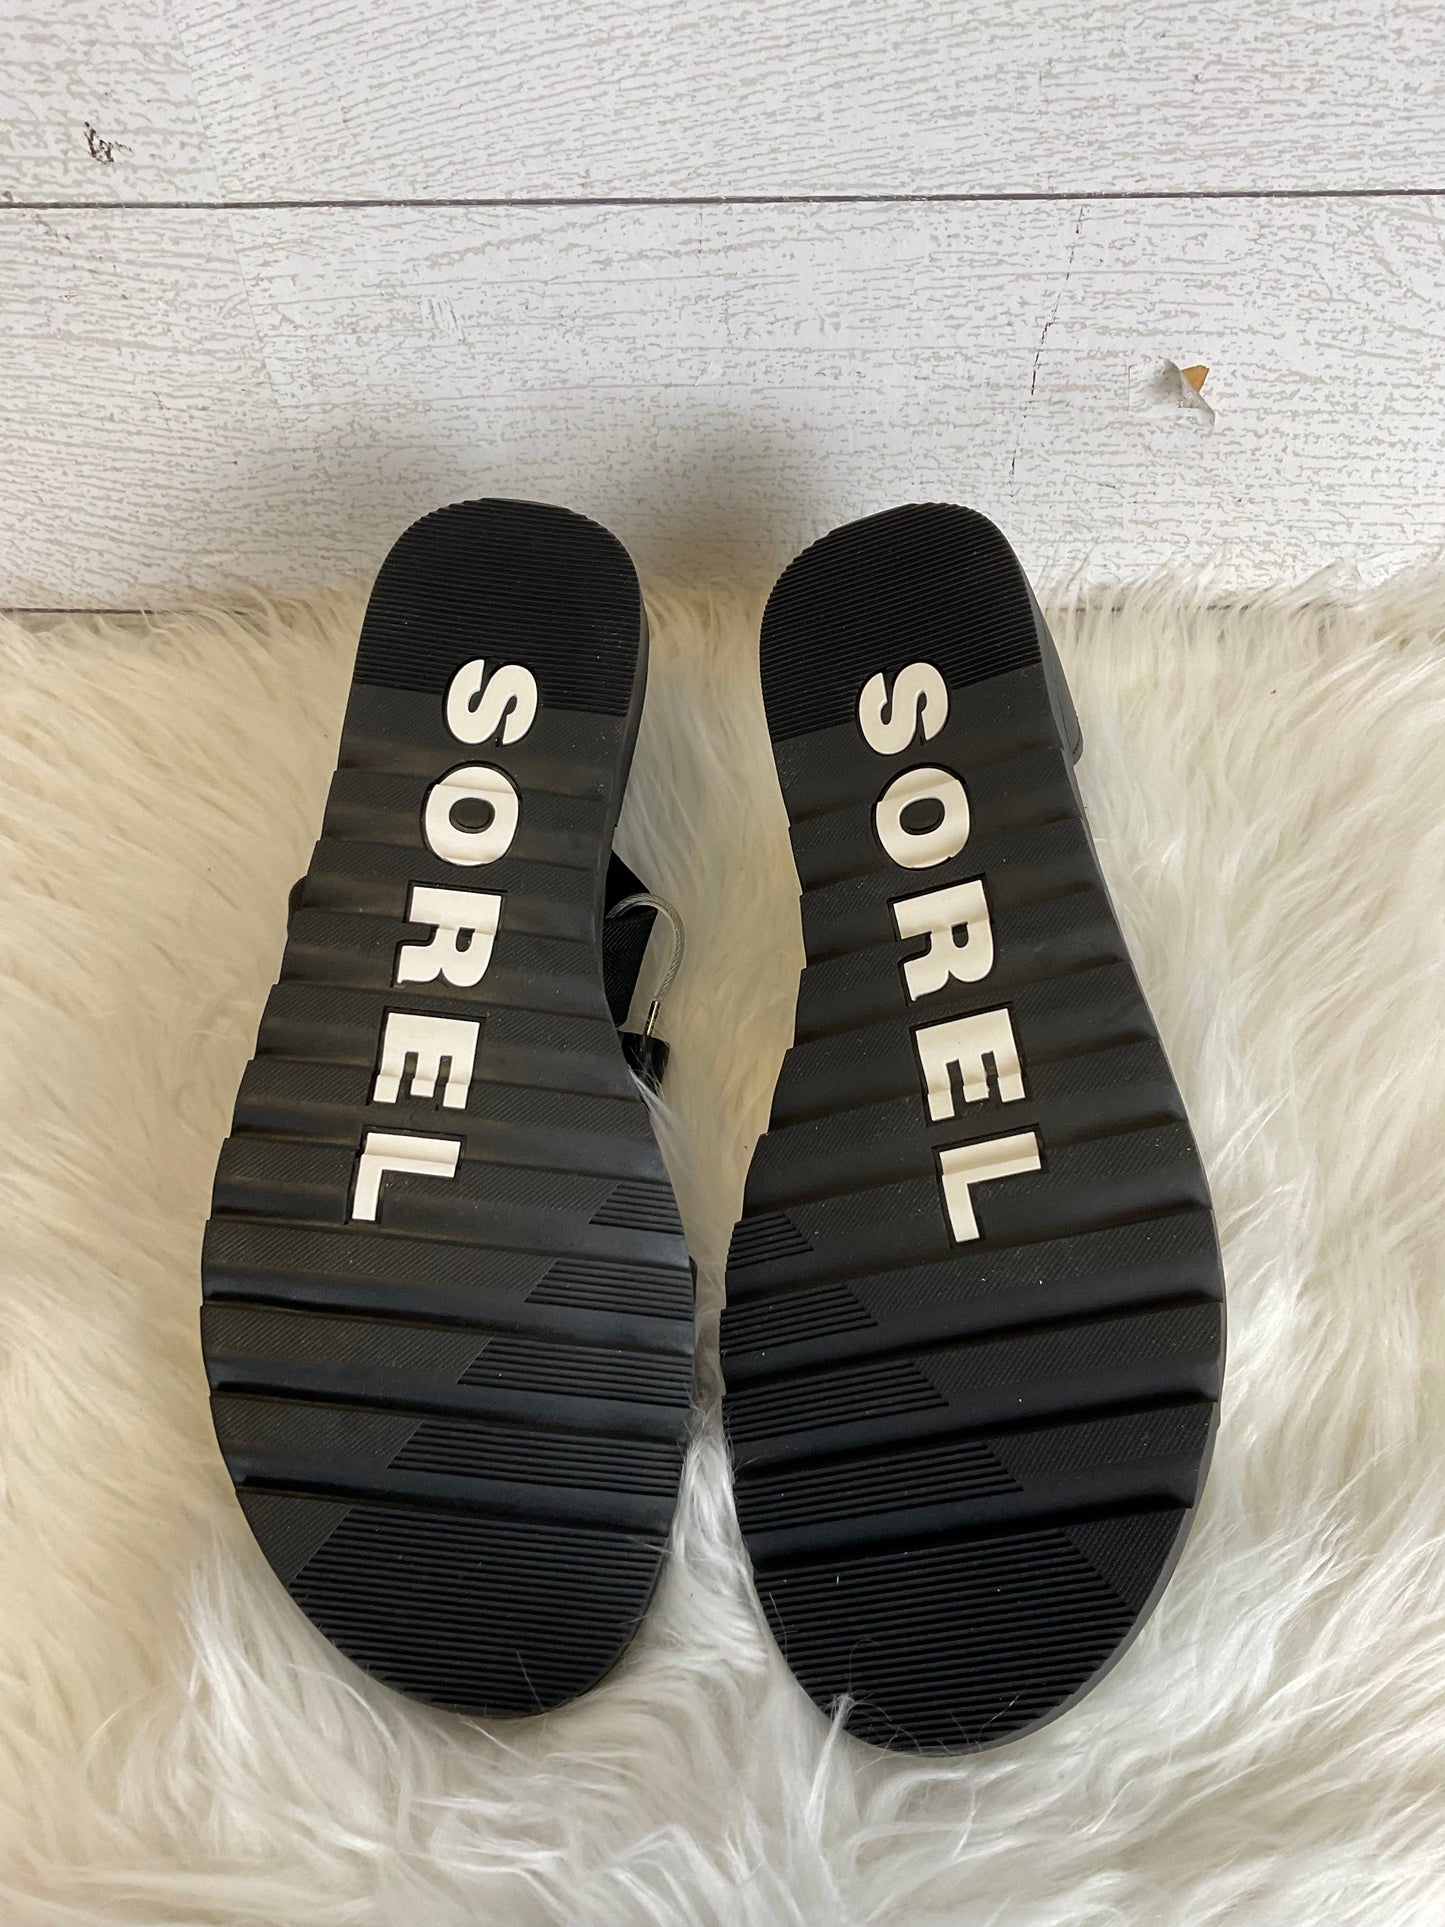 Black Sandals Flats Sorel, Size 10